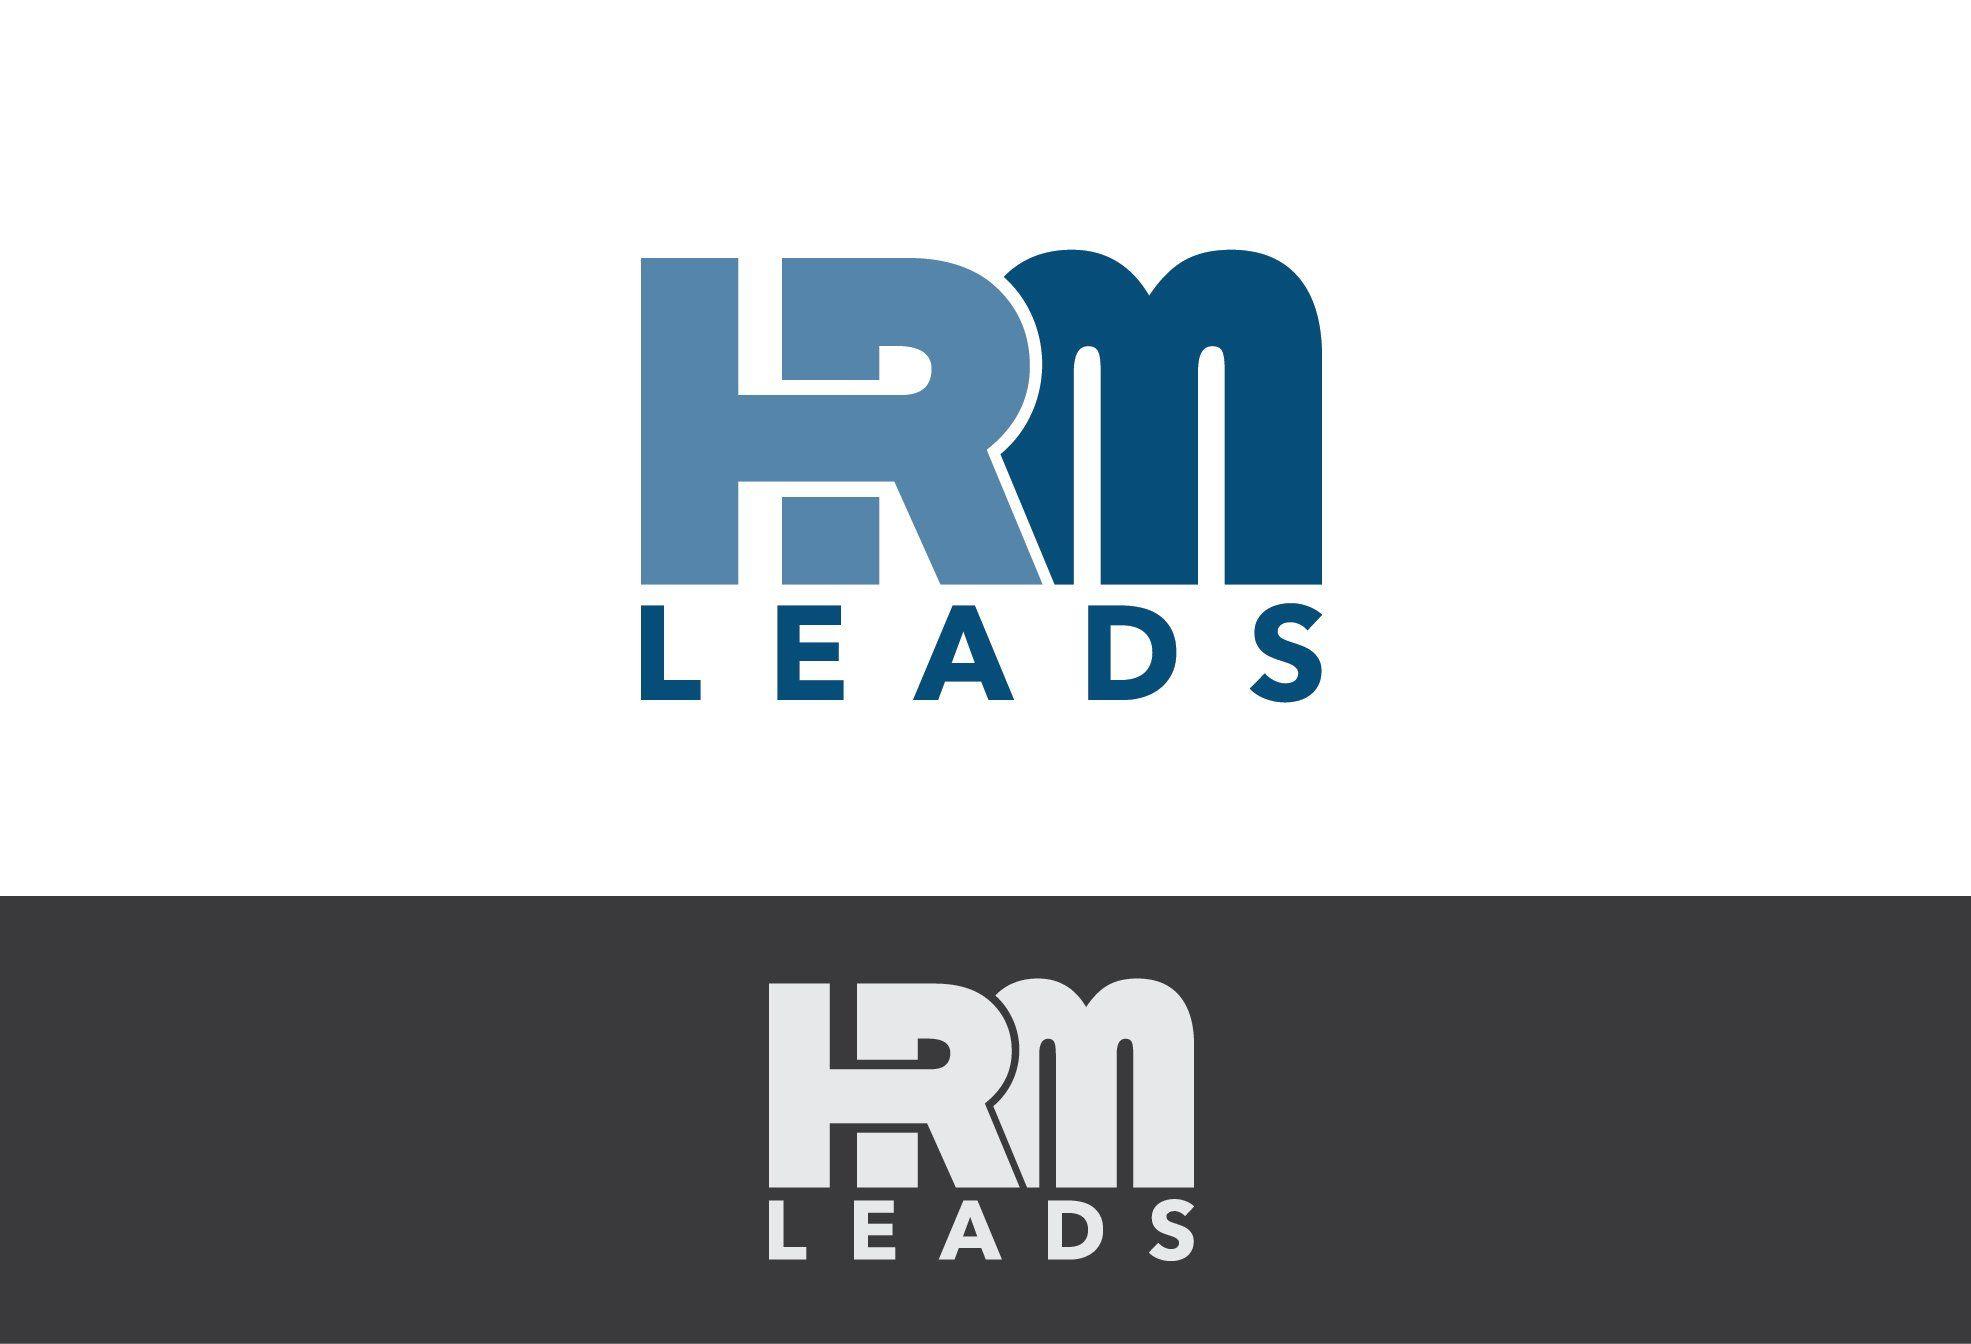 HRM Logo - Logo Design #110 | 'hrm-leads.com' design project | DesignContest ®